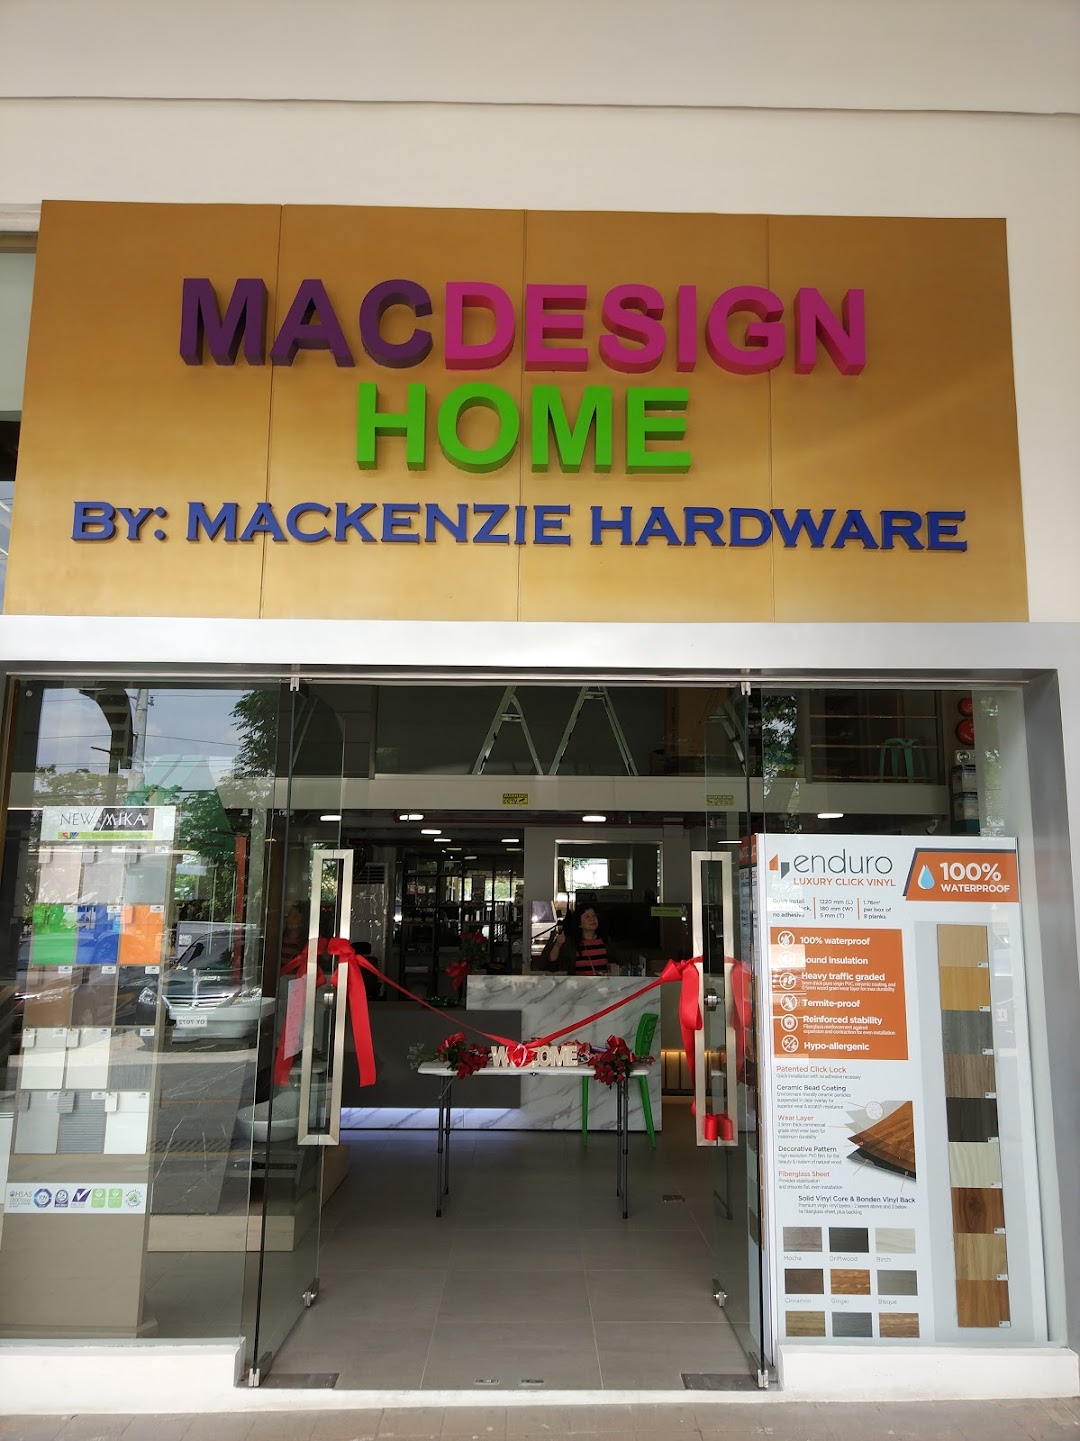 MACDESIGN by Mackenzie Hardware